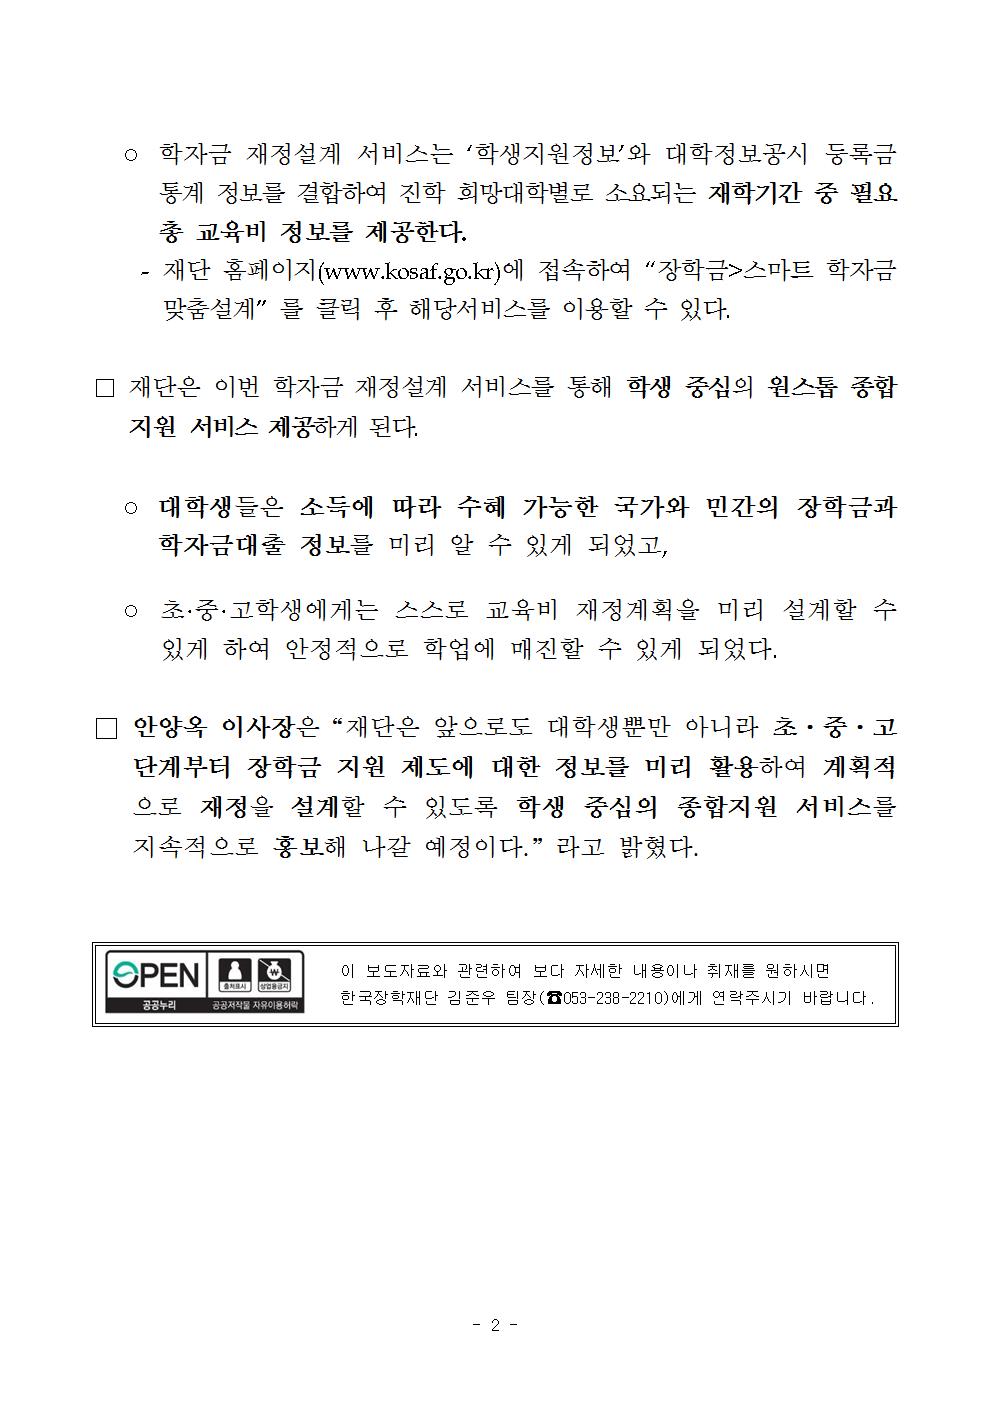 04-25(화)[보도자료] 한국장학재단, 맞춤형 학자금 재정설계 정부3.0 서비스 개시(최종)002.jpg